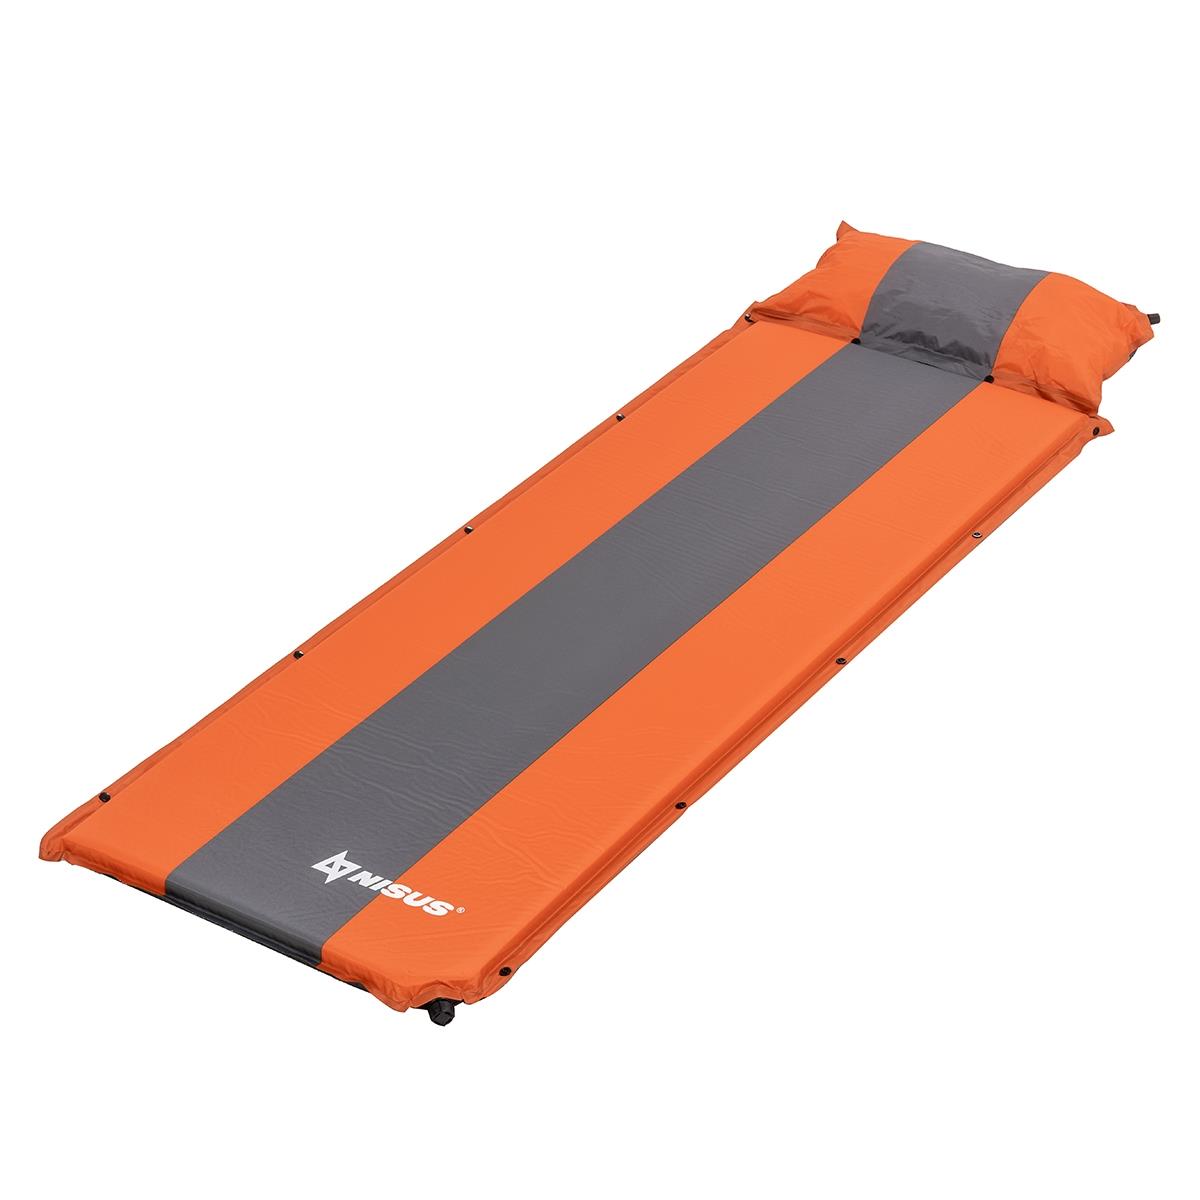 Коврик самонадув. с подушкой 30-170x65x5 оранжевый/серый (N-005P-OG) Nisus массажный коврик подлокотника ящерица с красной окантовкой 26×15 см